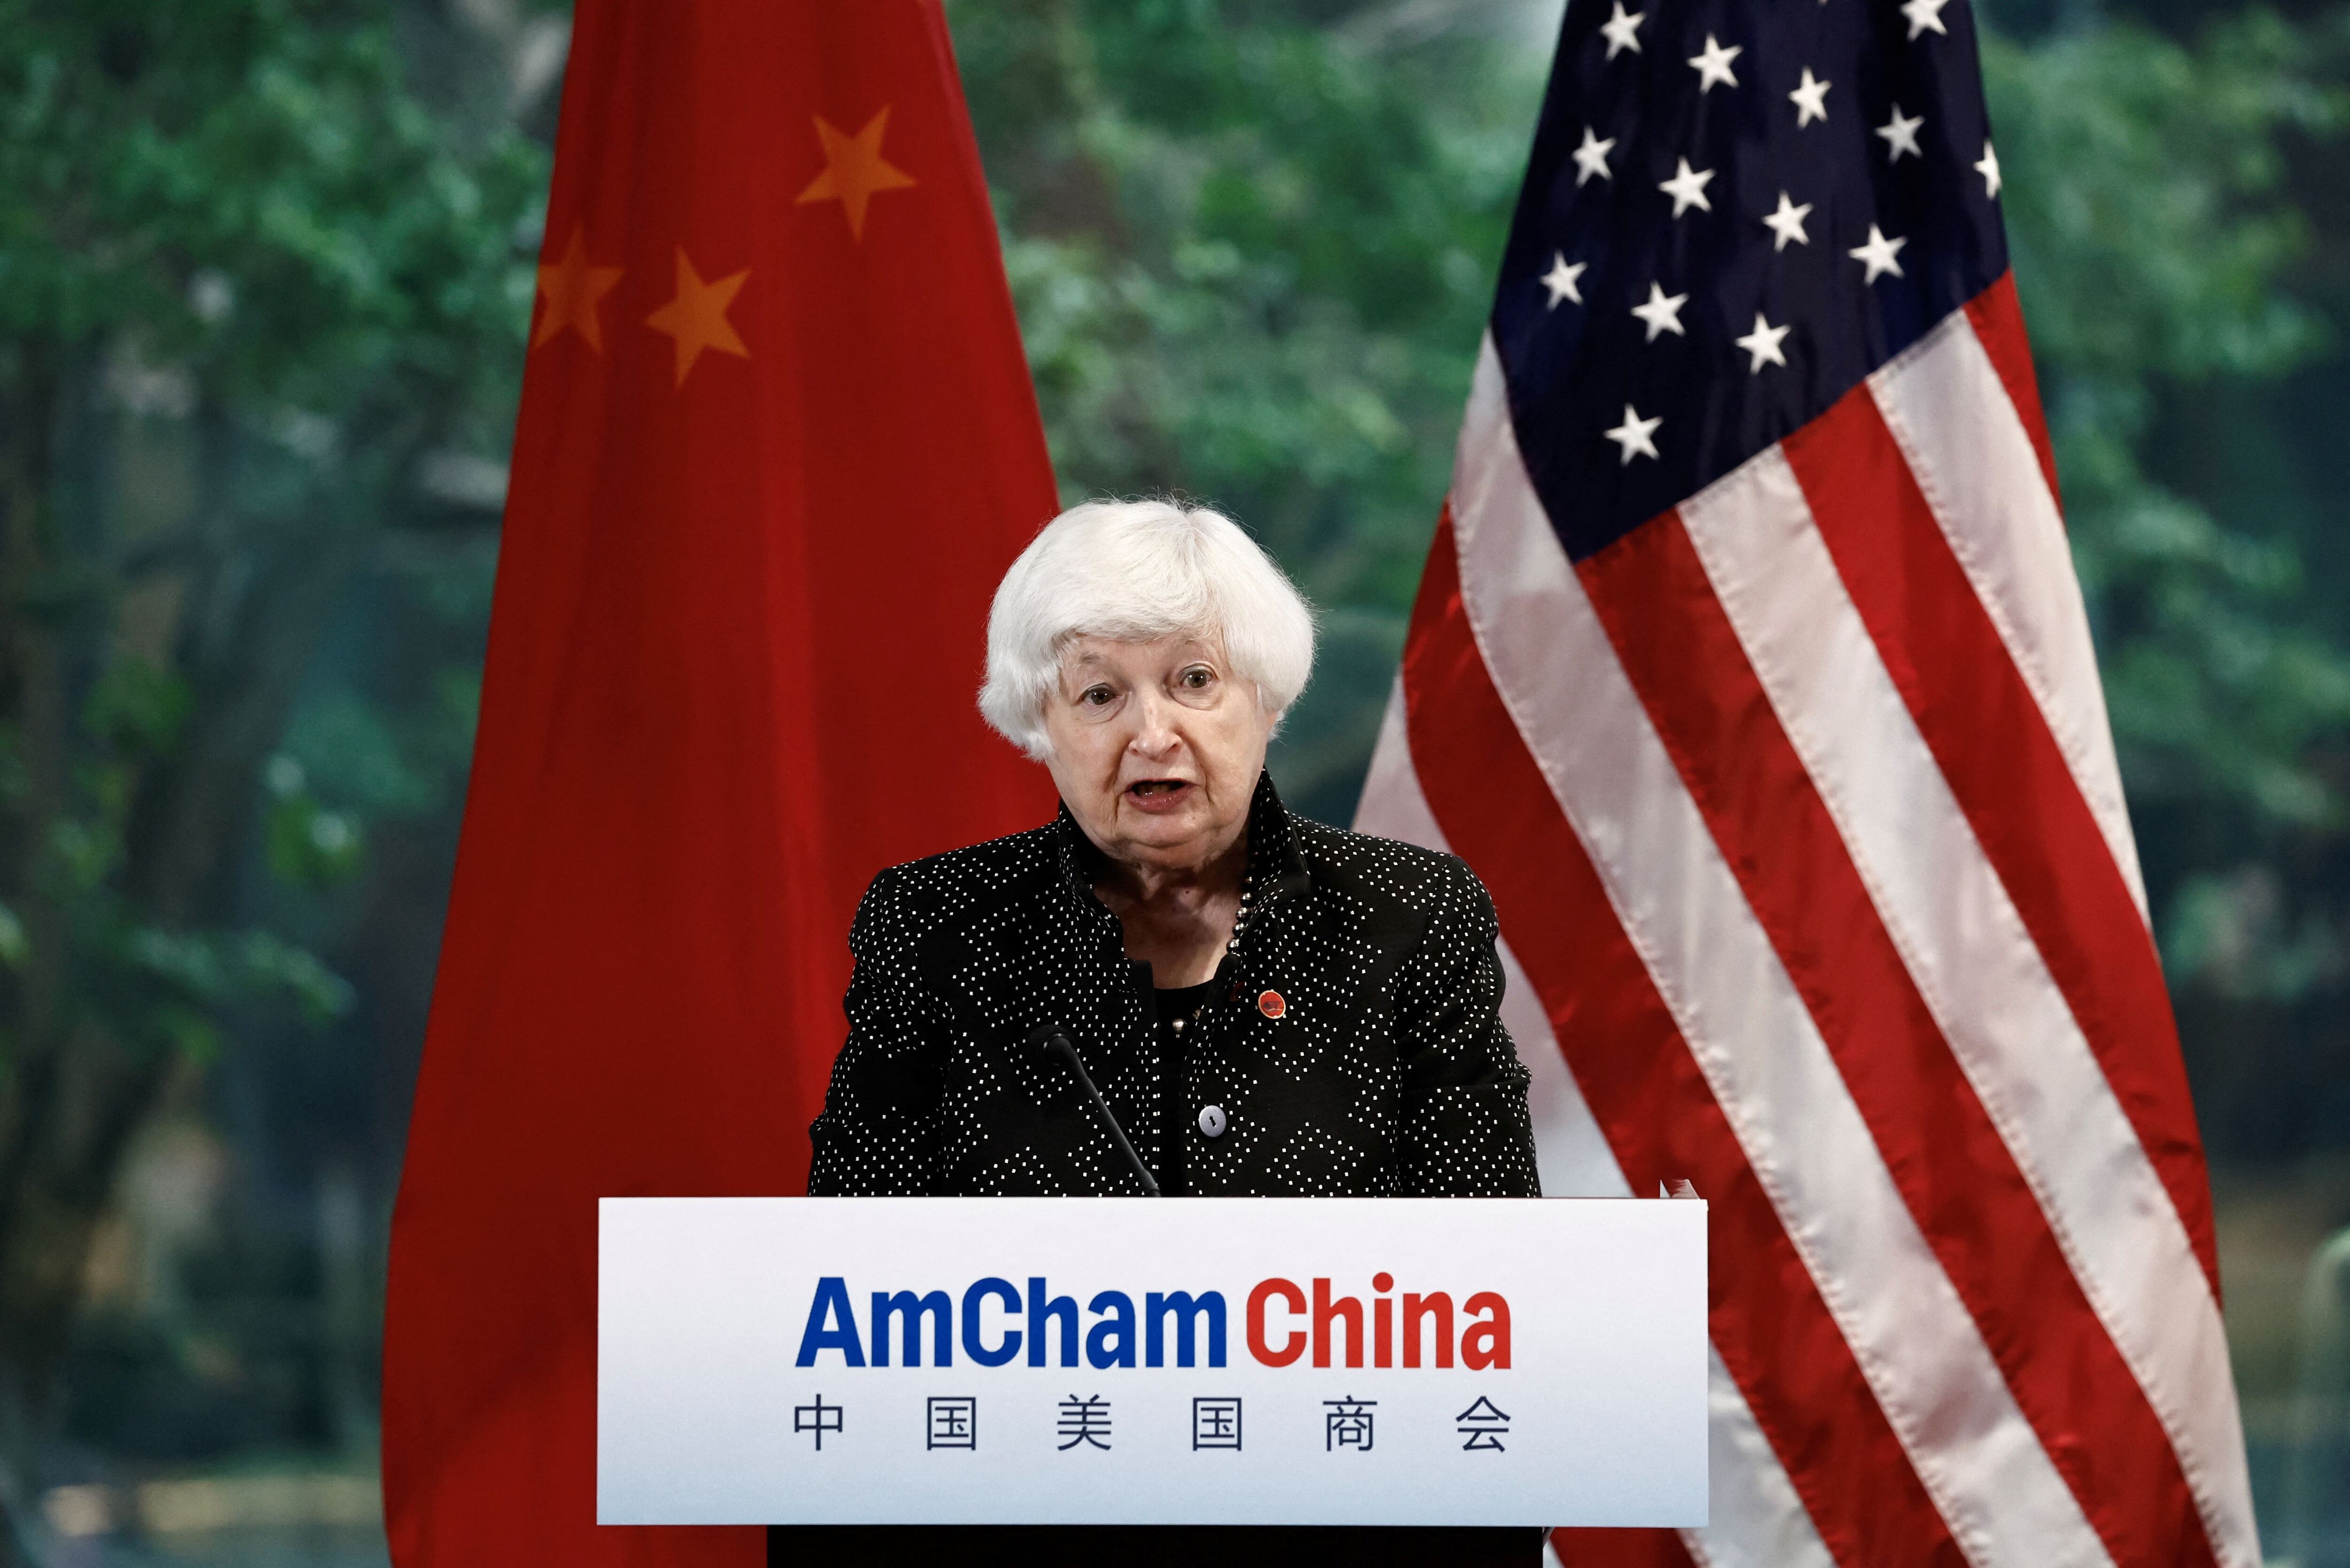 La secretaria del Tesoro de EEUU alertó sobre los riesgos de los subsidios chinos  que podrían afectar la economía global. (REUTERS/Tingshu Wang)